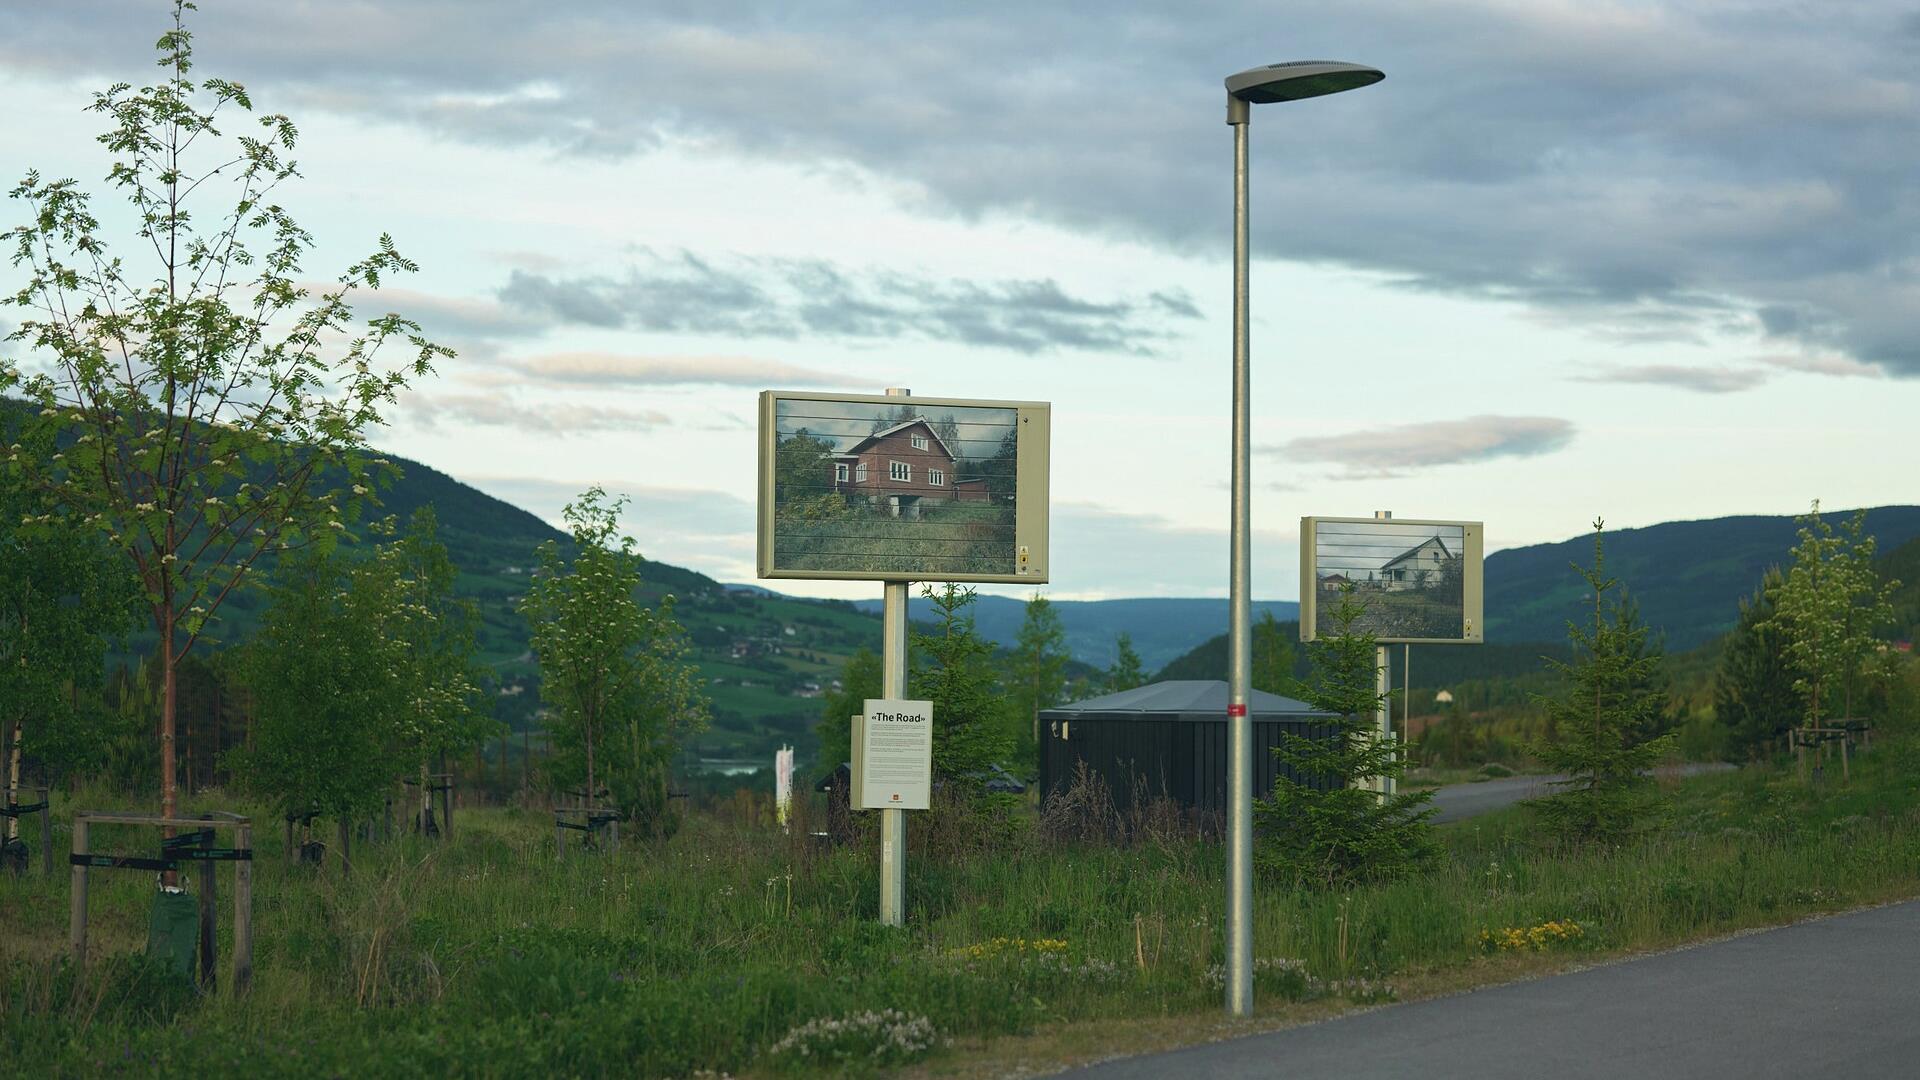 The Road, Lars-Andreas Tovey Kristiansen (2017). Kunstverkene i Kunstlandskap Gudbrandsdalen ligger på rekke og rad, en veiviser til bortgjemte naturperler, historie og moderne utvikling.